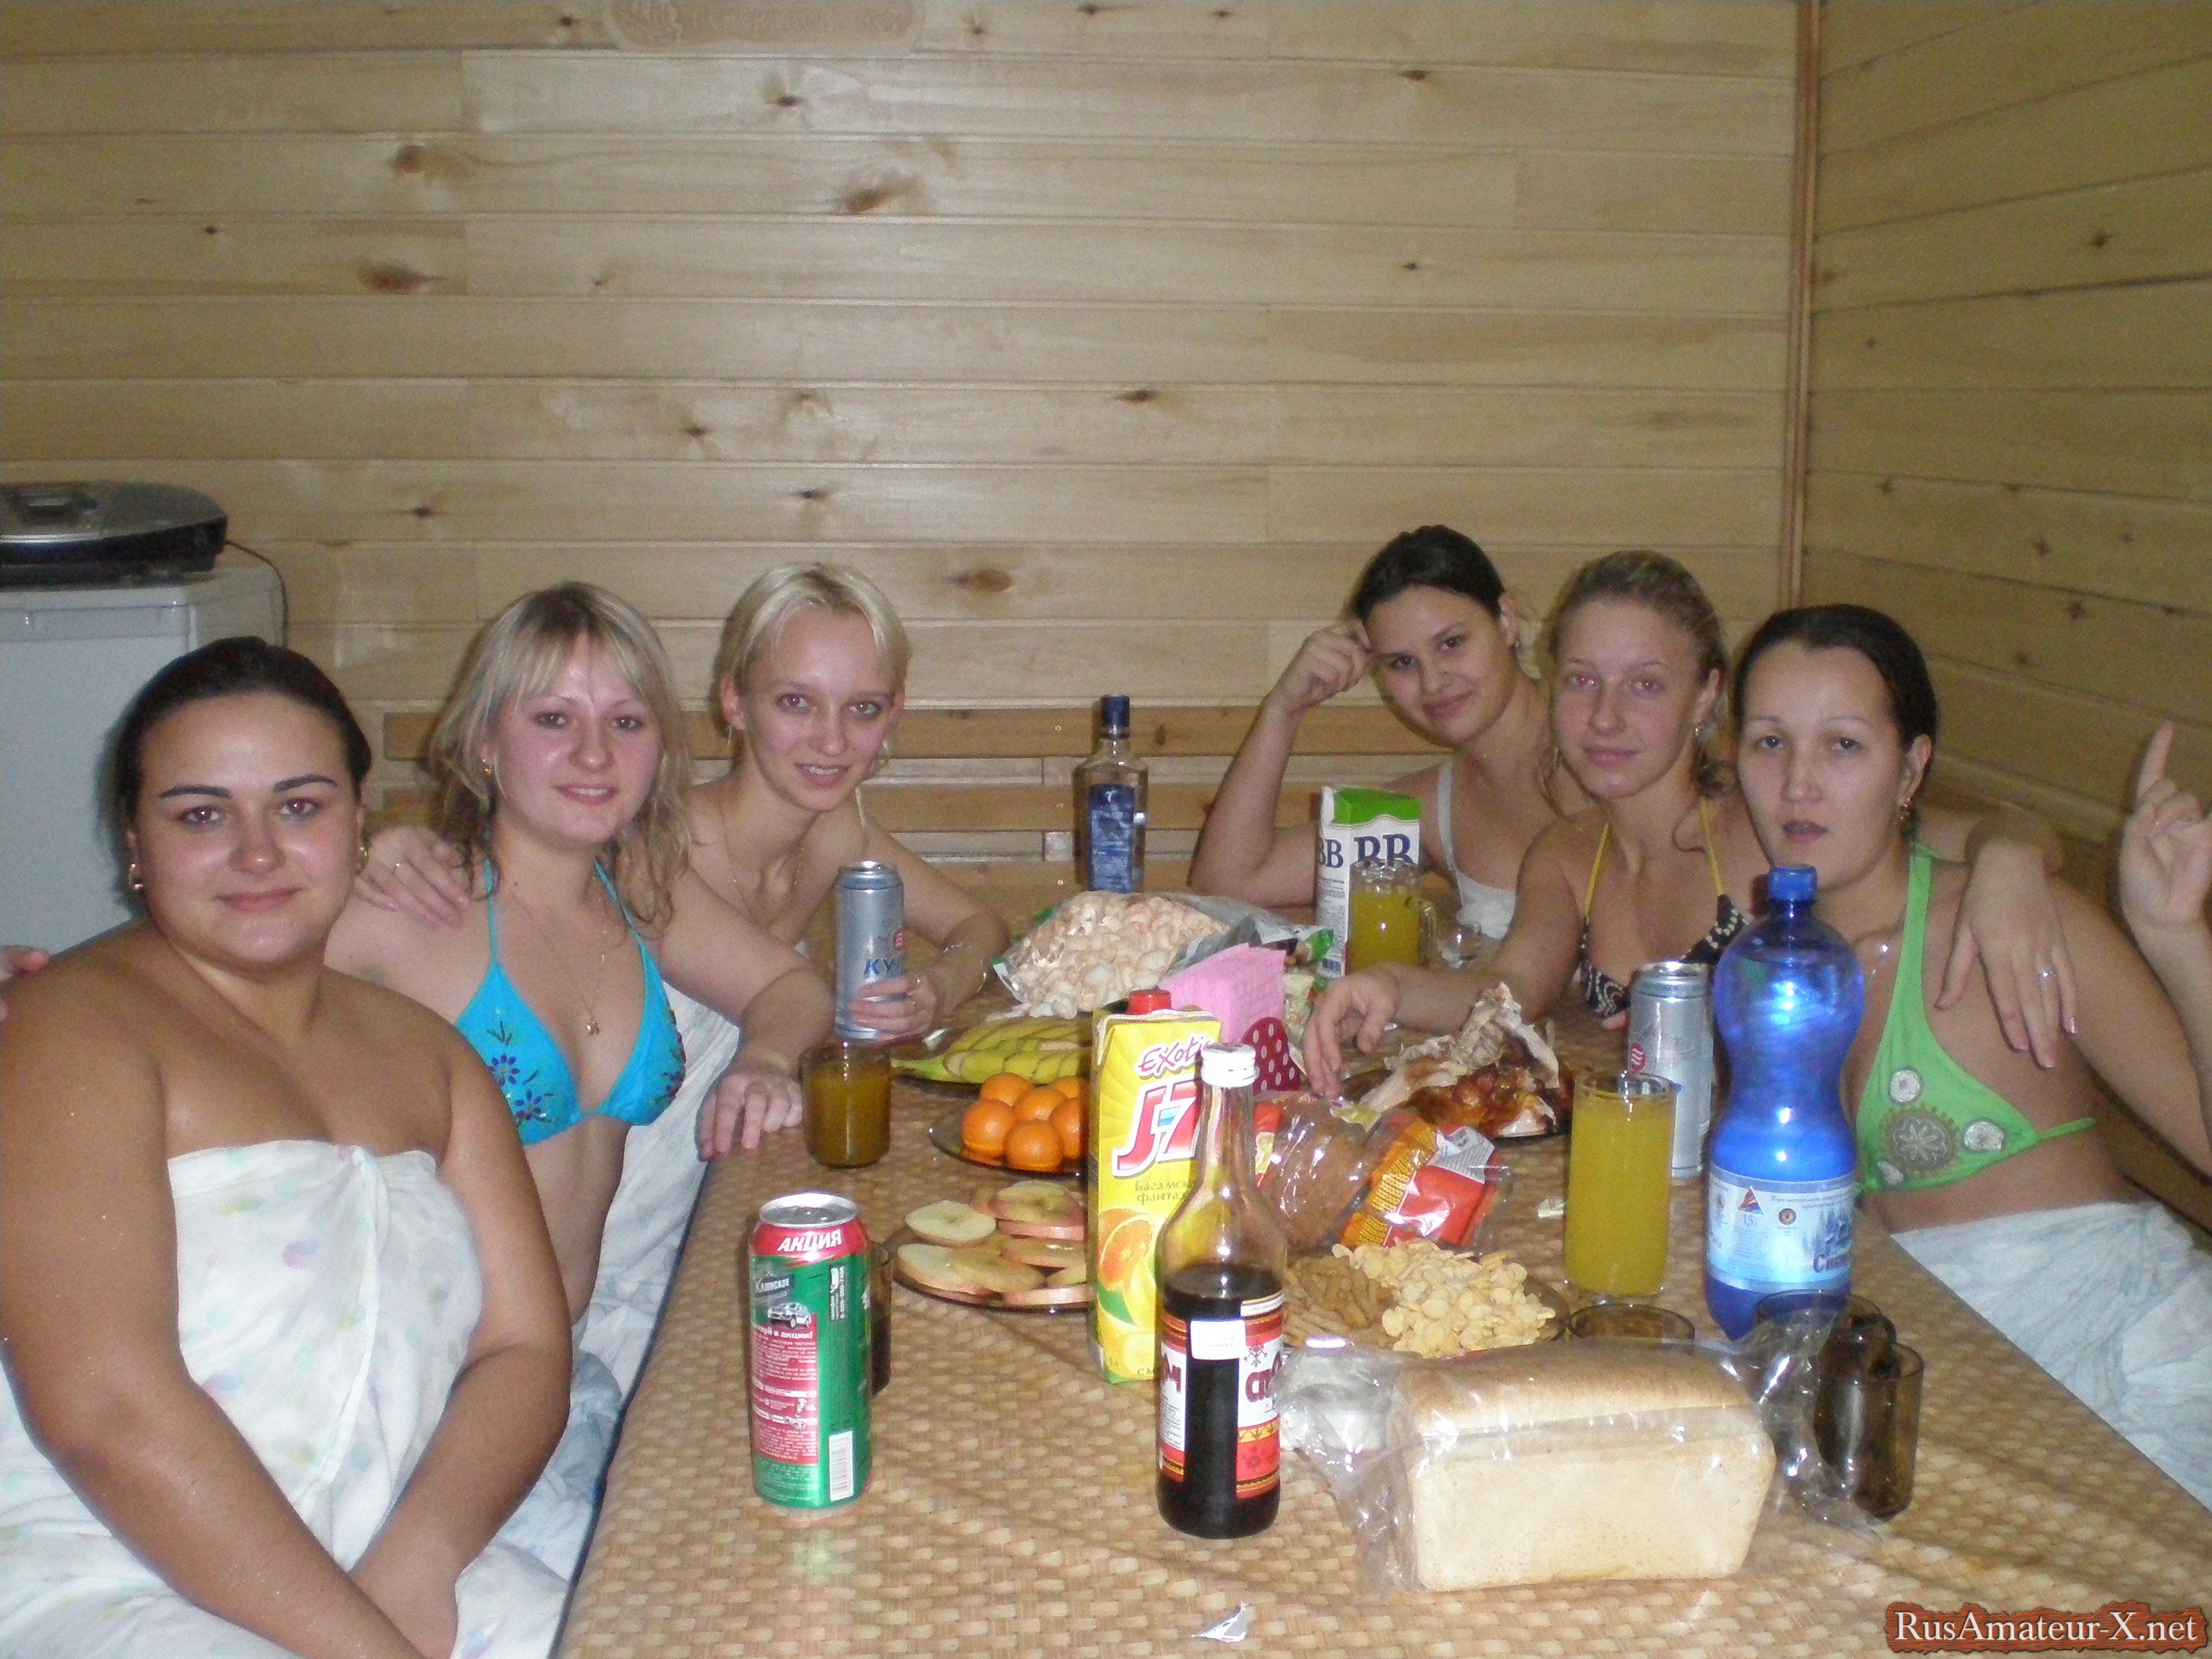 Подруги отдыхают в сауне с выпивкой порно фото